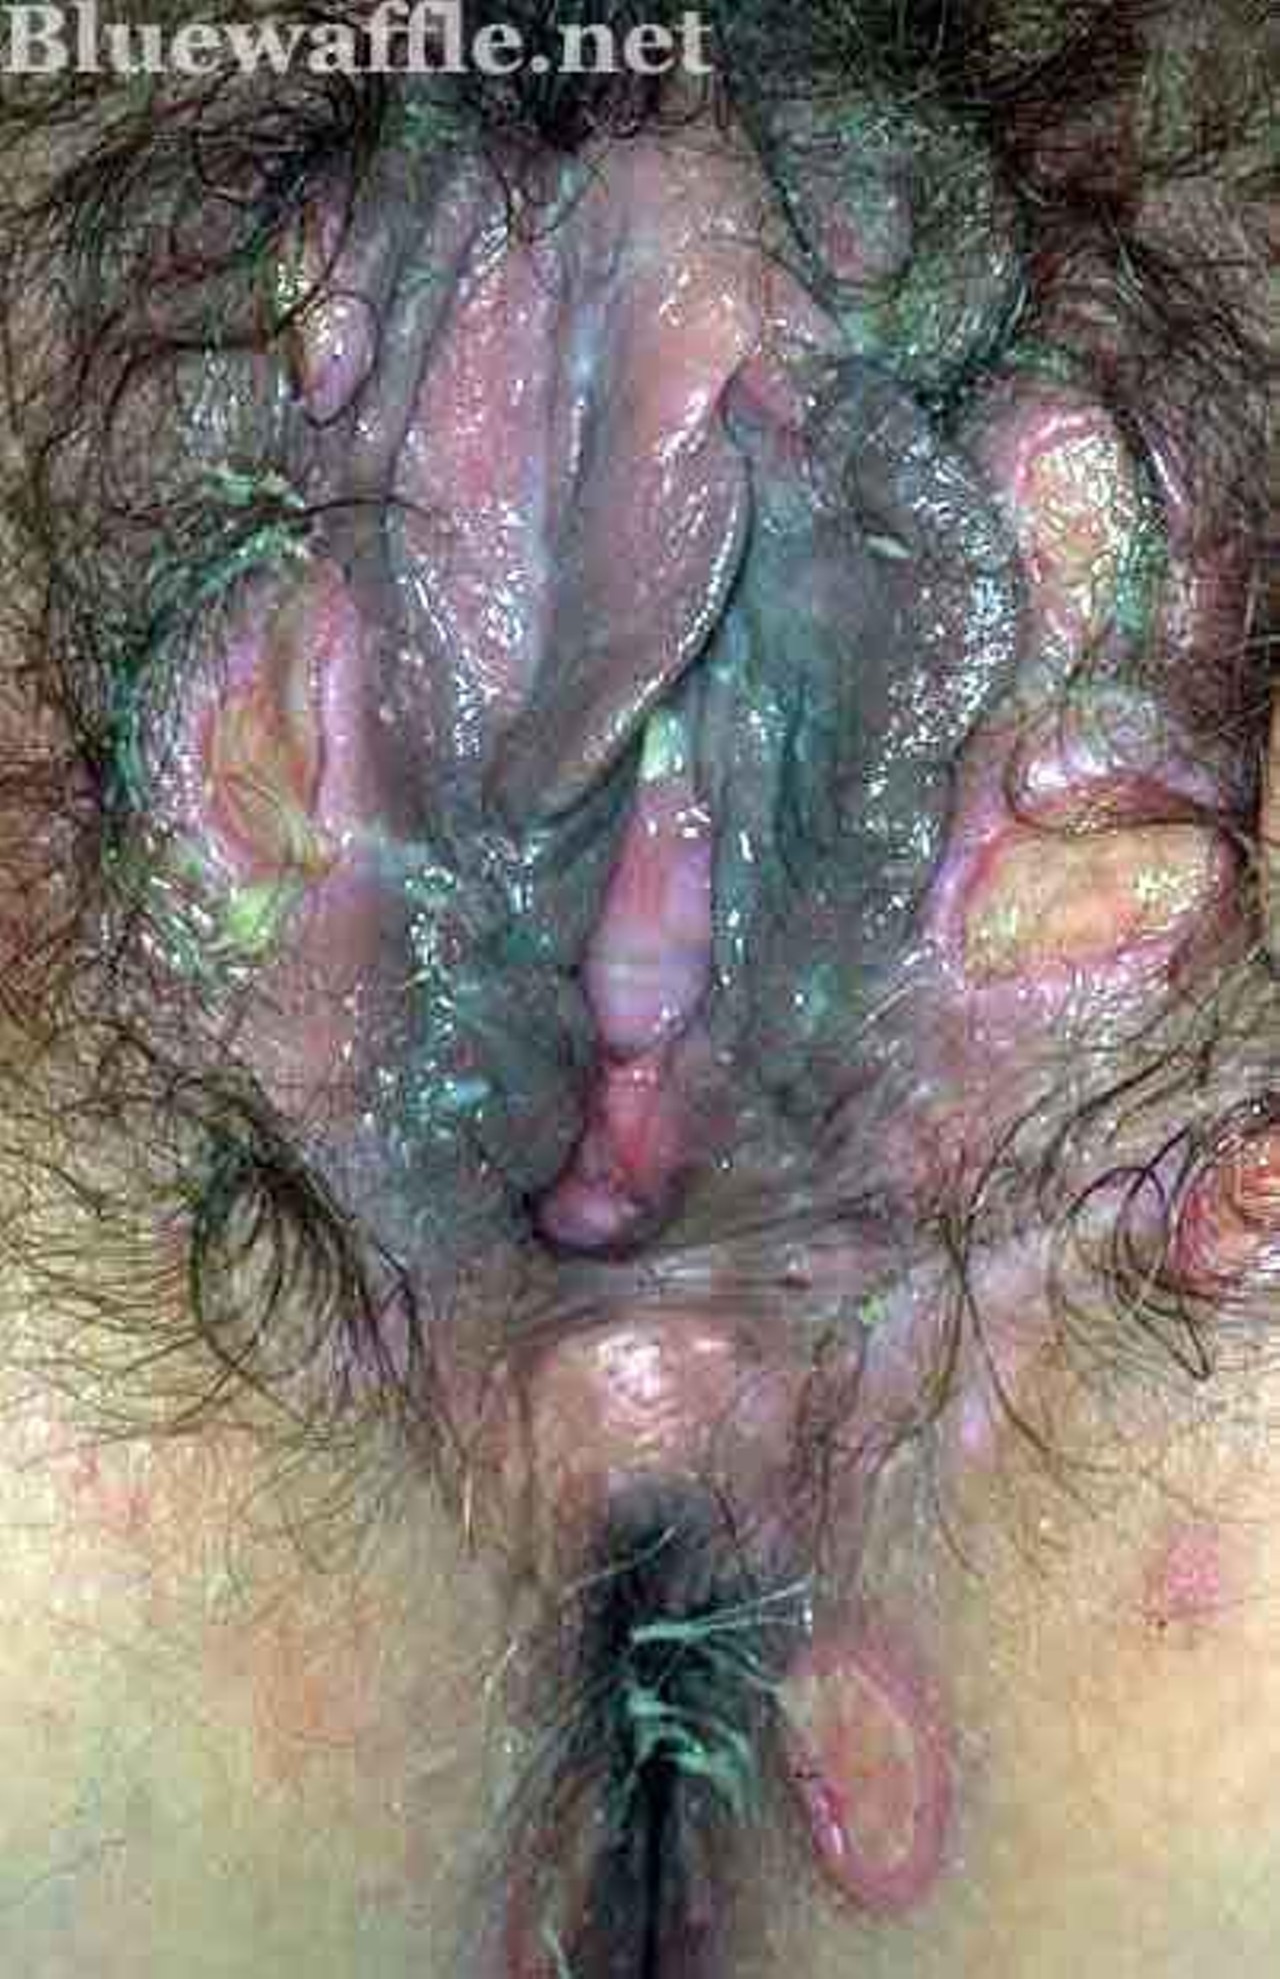 Blue wafflé disease images